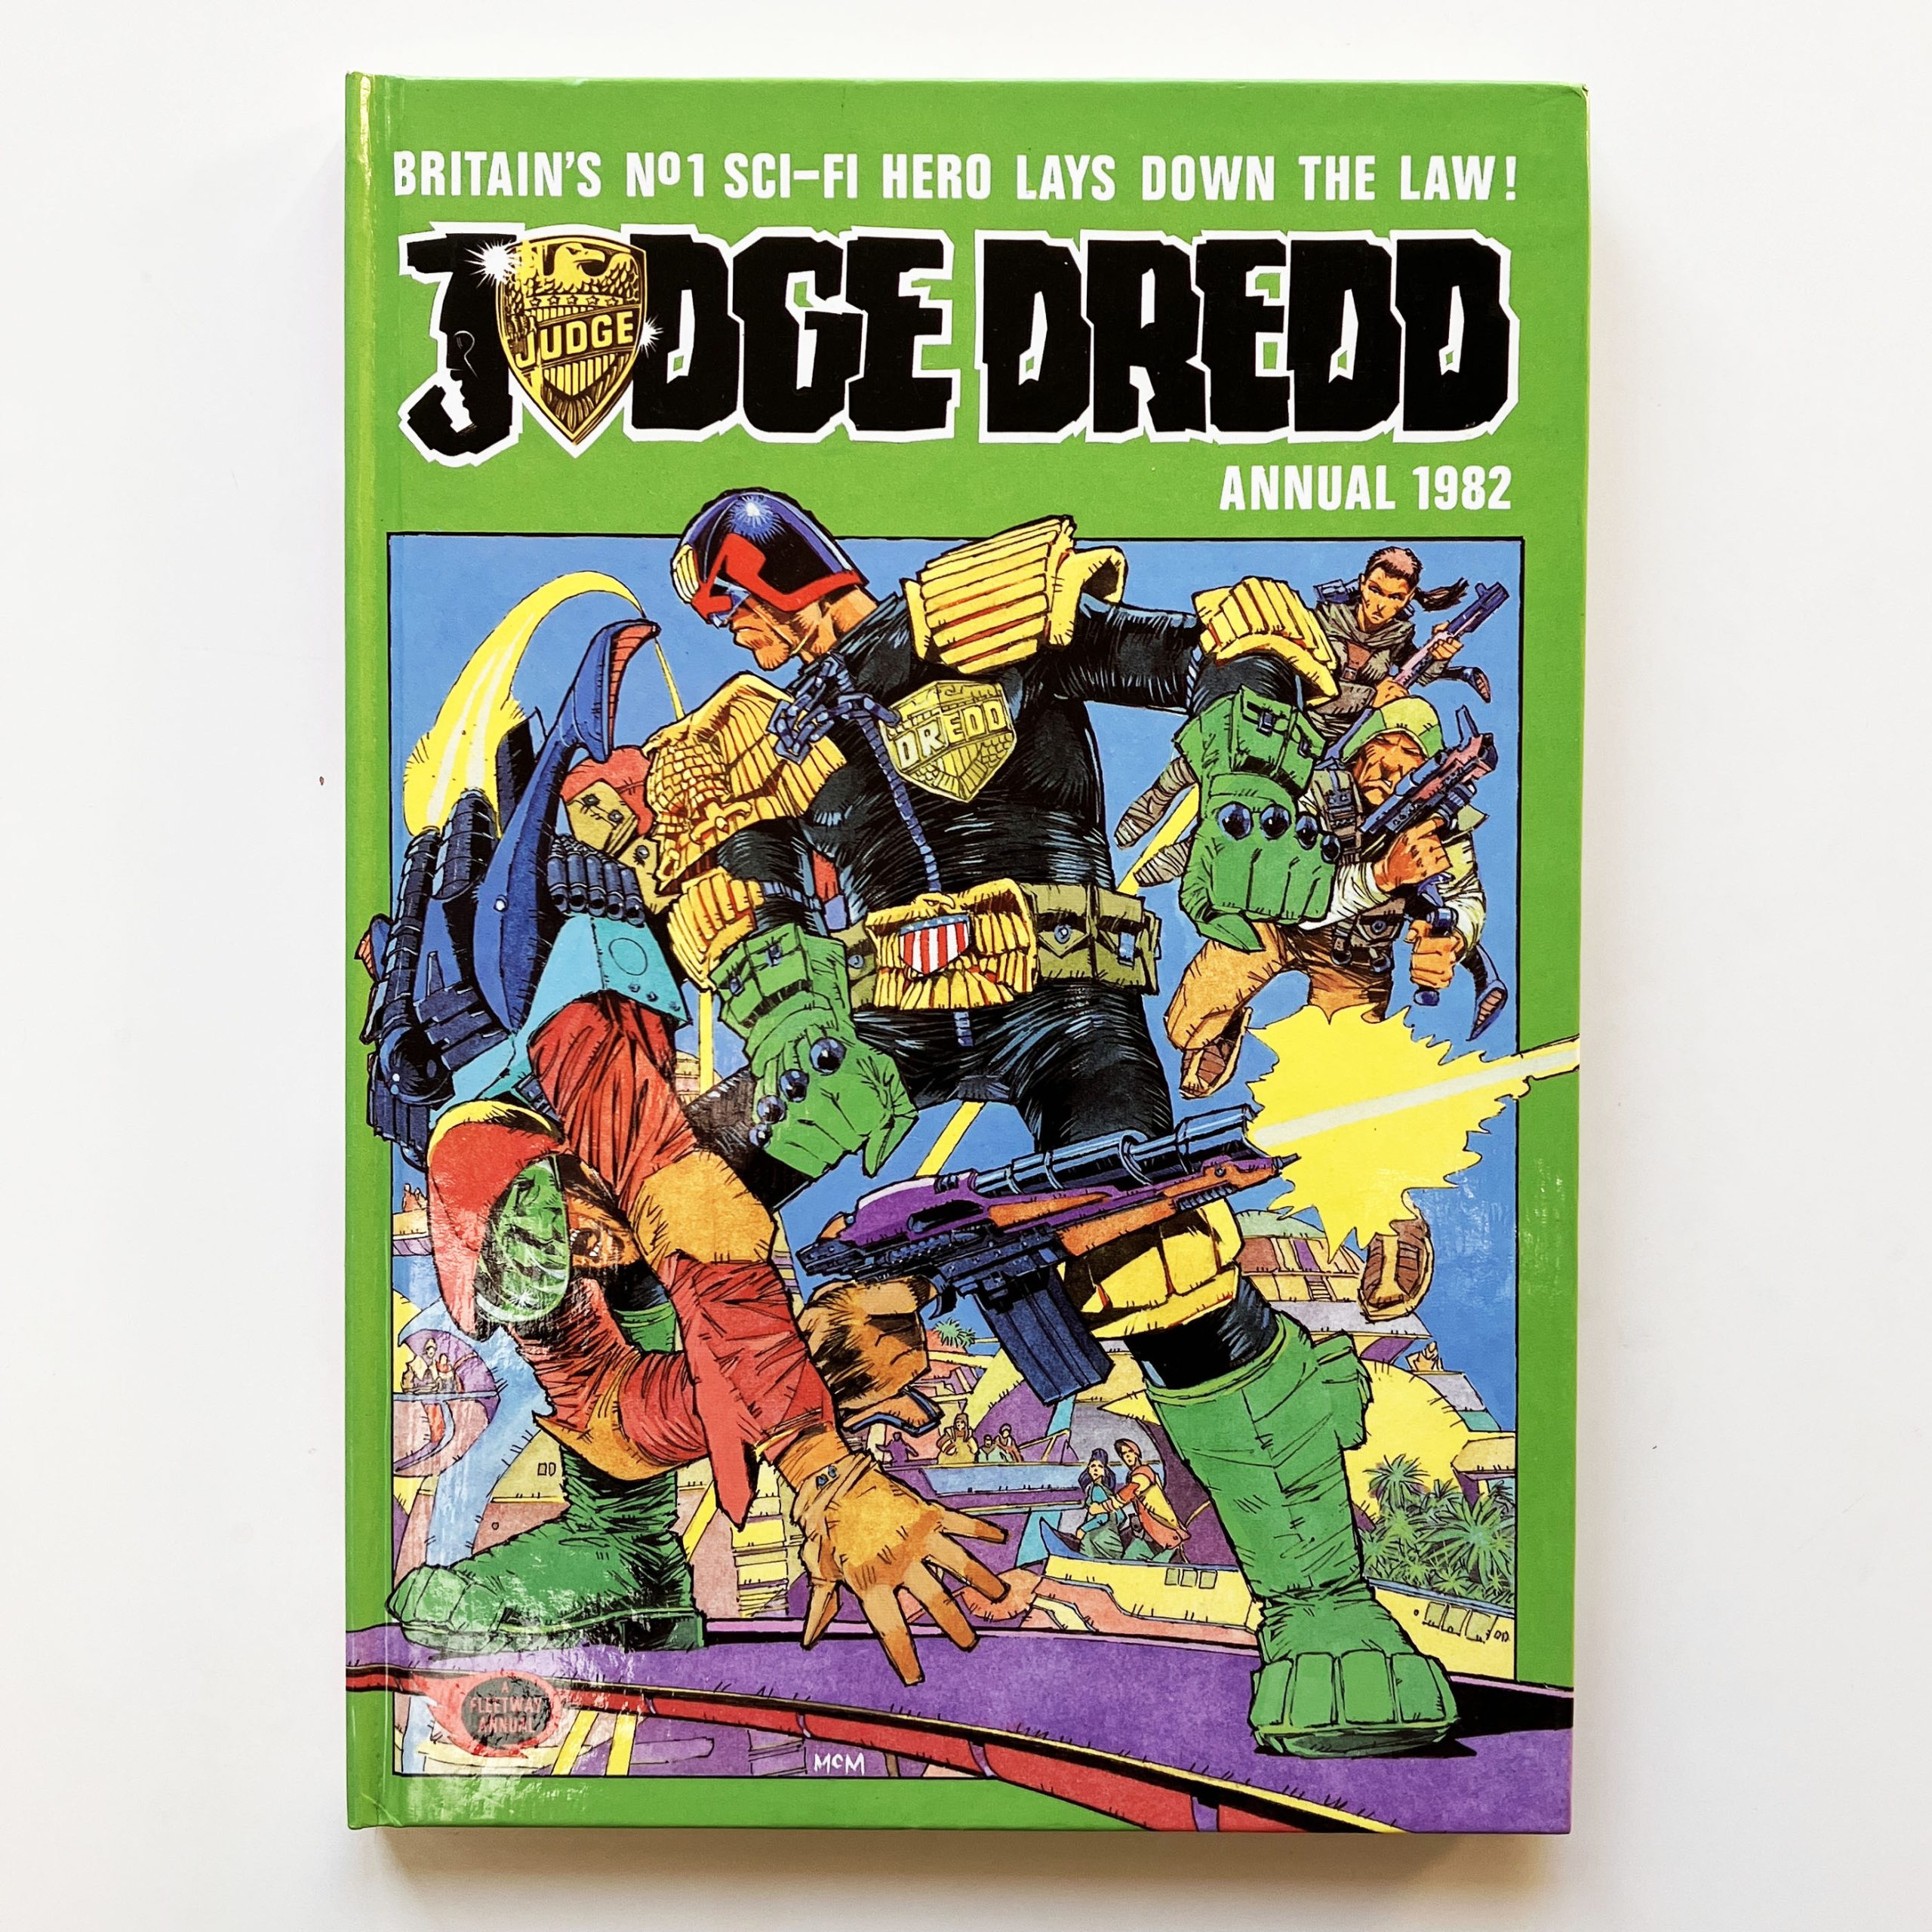 2000AD Annual 1982 Judge Dredd Hardcover